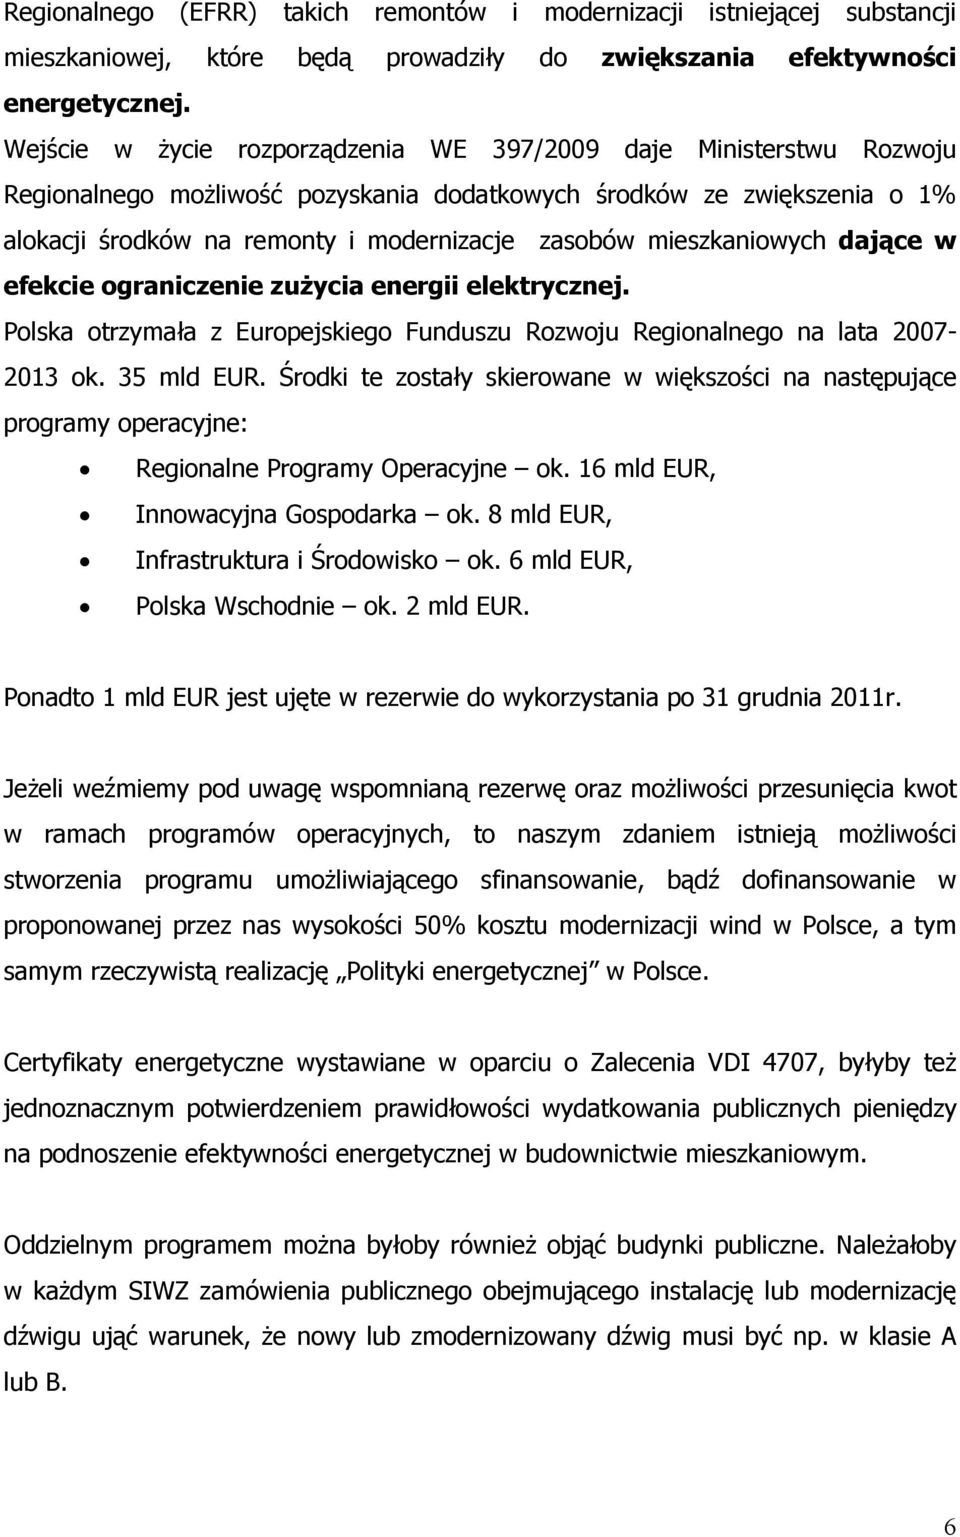 mieszkaniowych dające w efekcie ograniczenie zuŝycia energii elektrycznej. Polska otrzymała z Europejskiego Funduszu Rozwoju Regionalnego na lata 2007-2013 ok. 35 mld EUR.